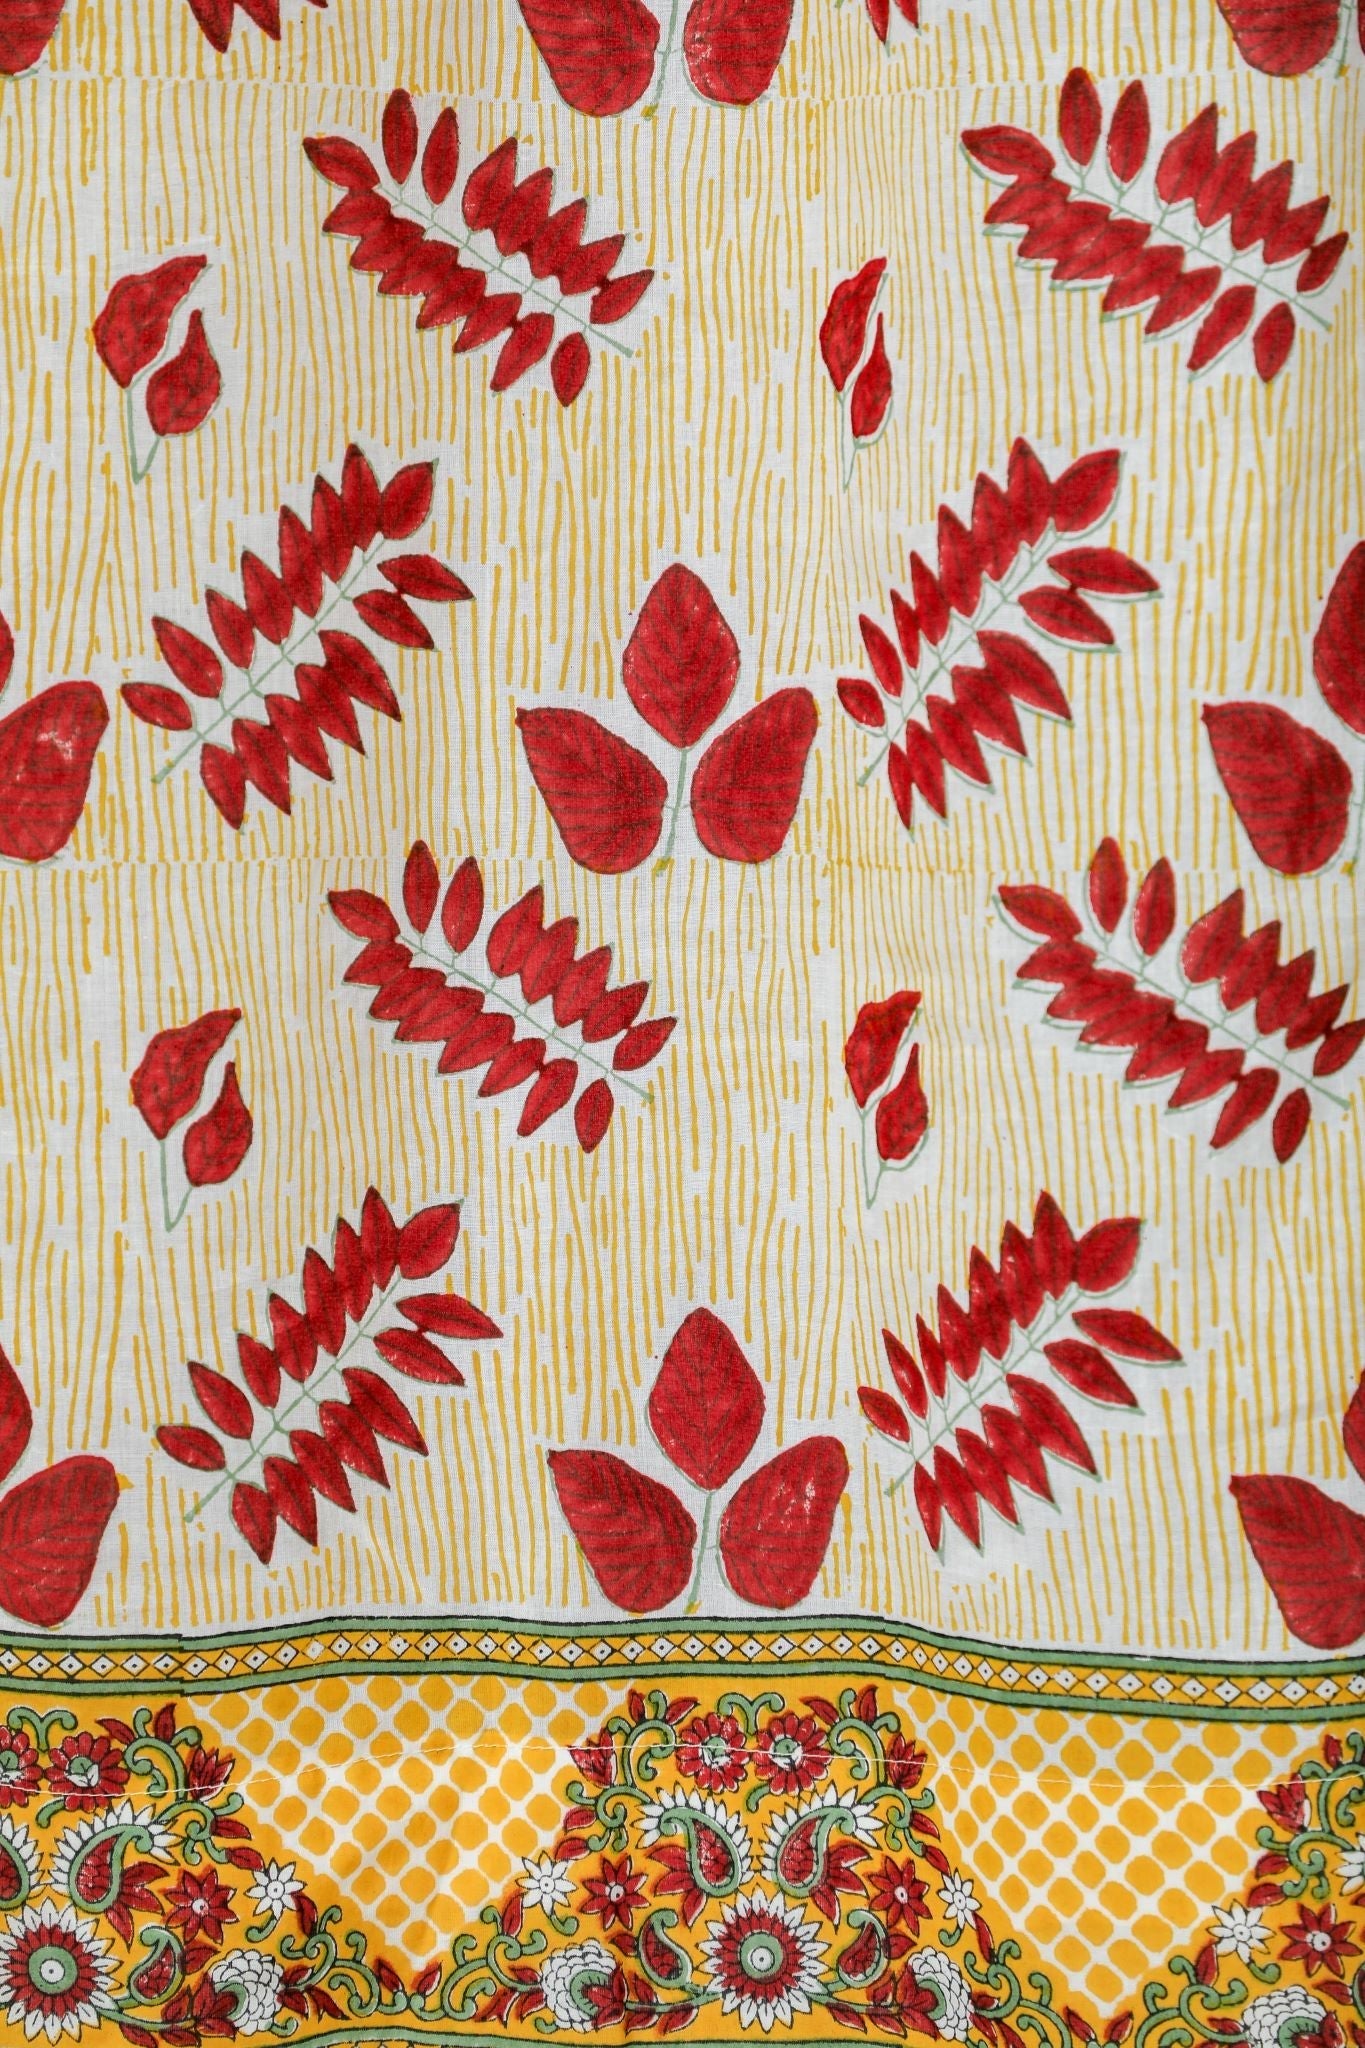 SootiSyahi 'Glow of Autum' Handblock Printed Cotton Door Curtain - SootiSyahi